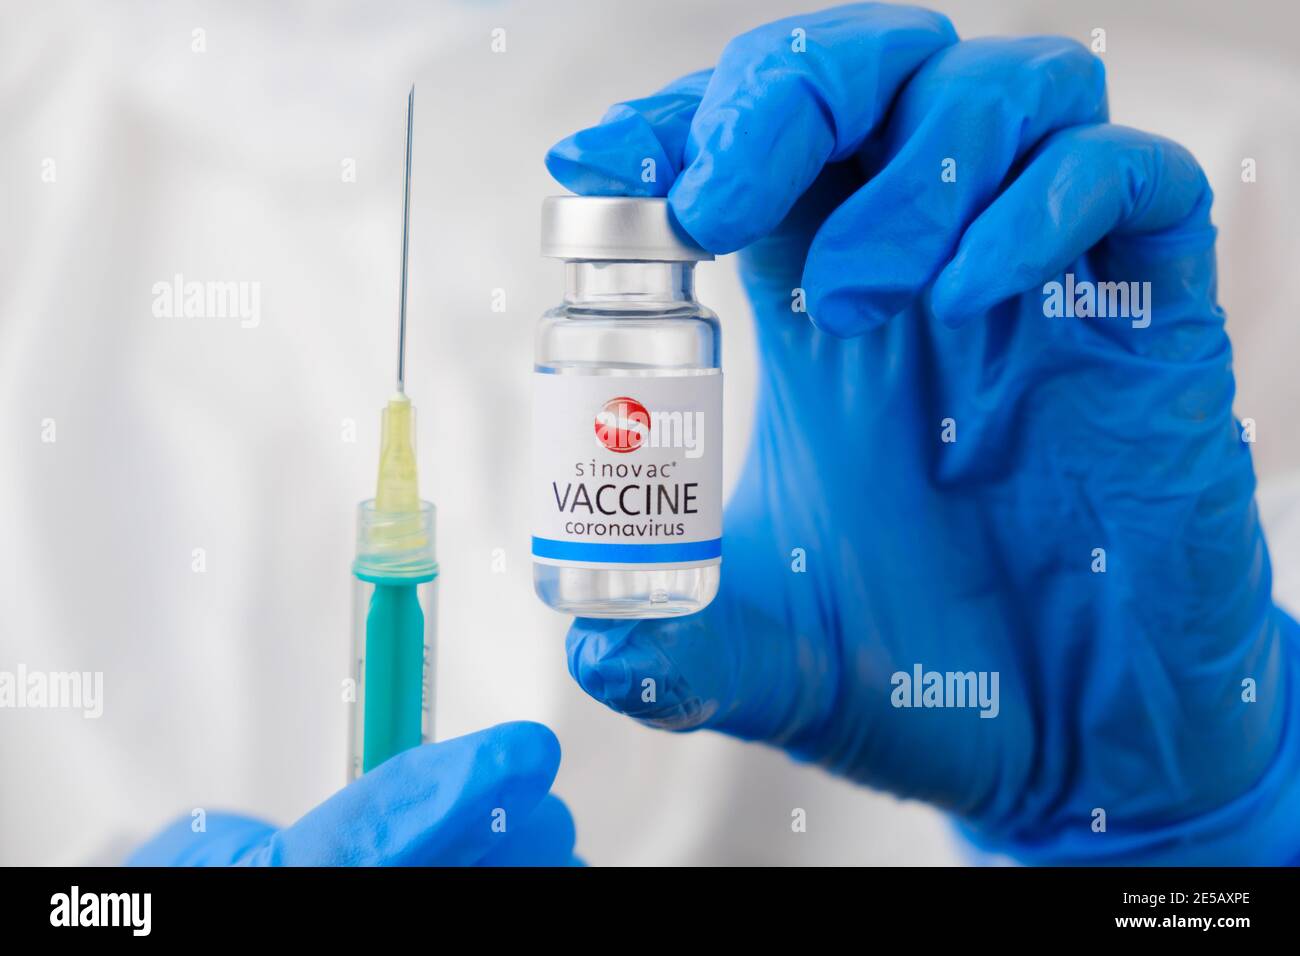 Vaccino Sinovac e siringa monouso per iniezione nelle mani dei medici. Prevention of Coronavirus, Sars-COV-2, Covid-19, gennaio 2021, San Francisco Foto Stock